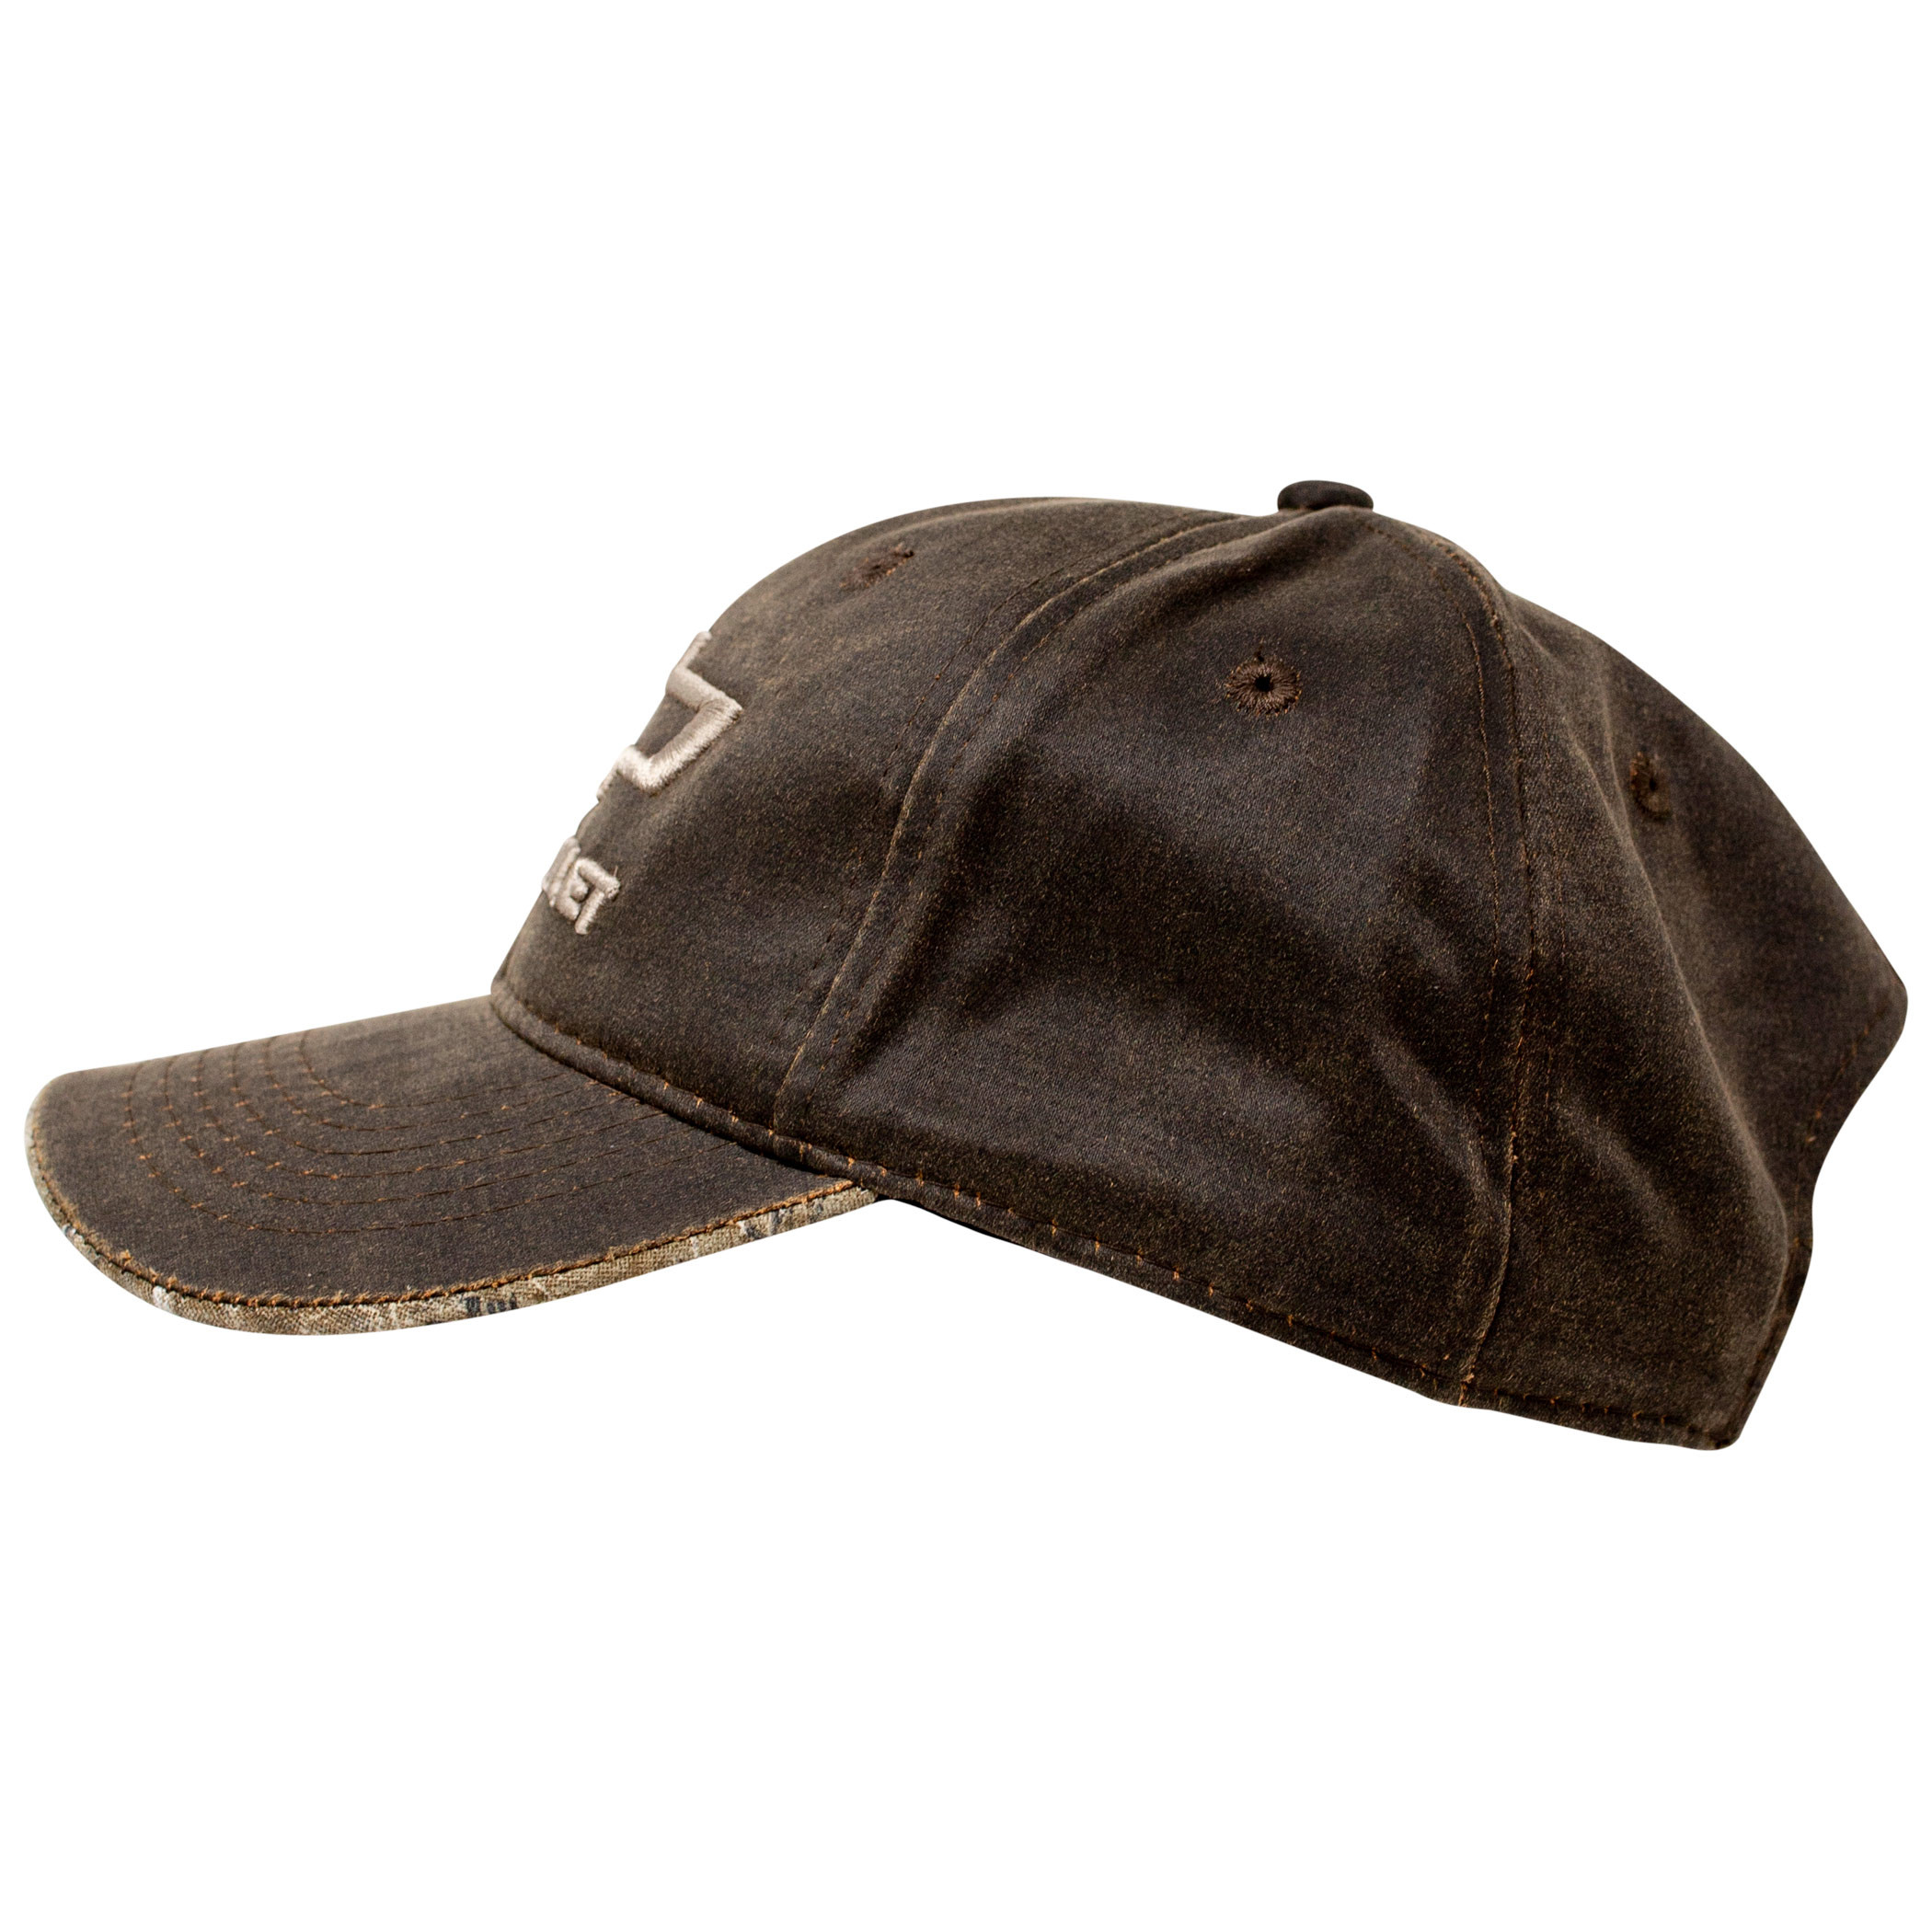 Chevrolet Logo Oil Washed Snapback Hat